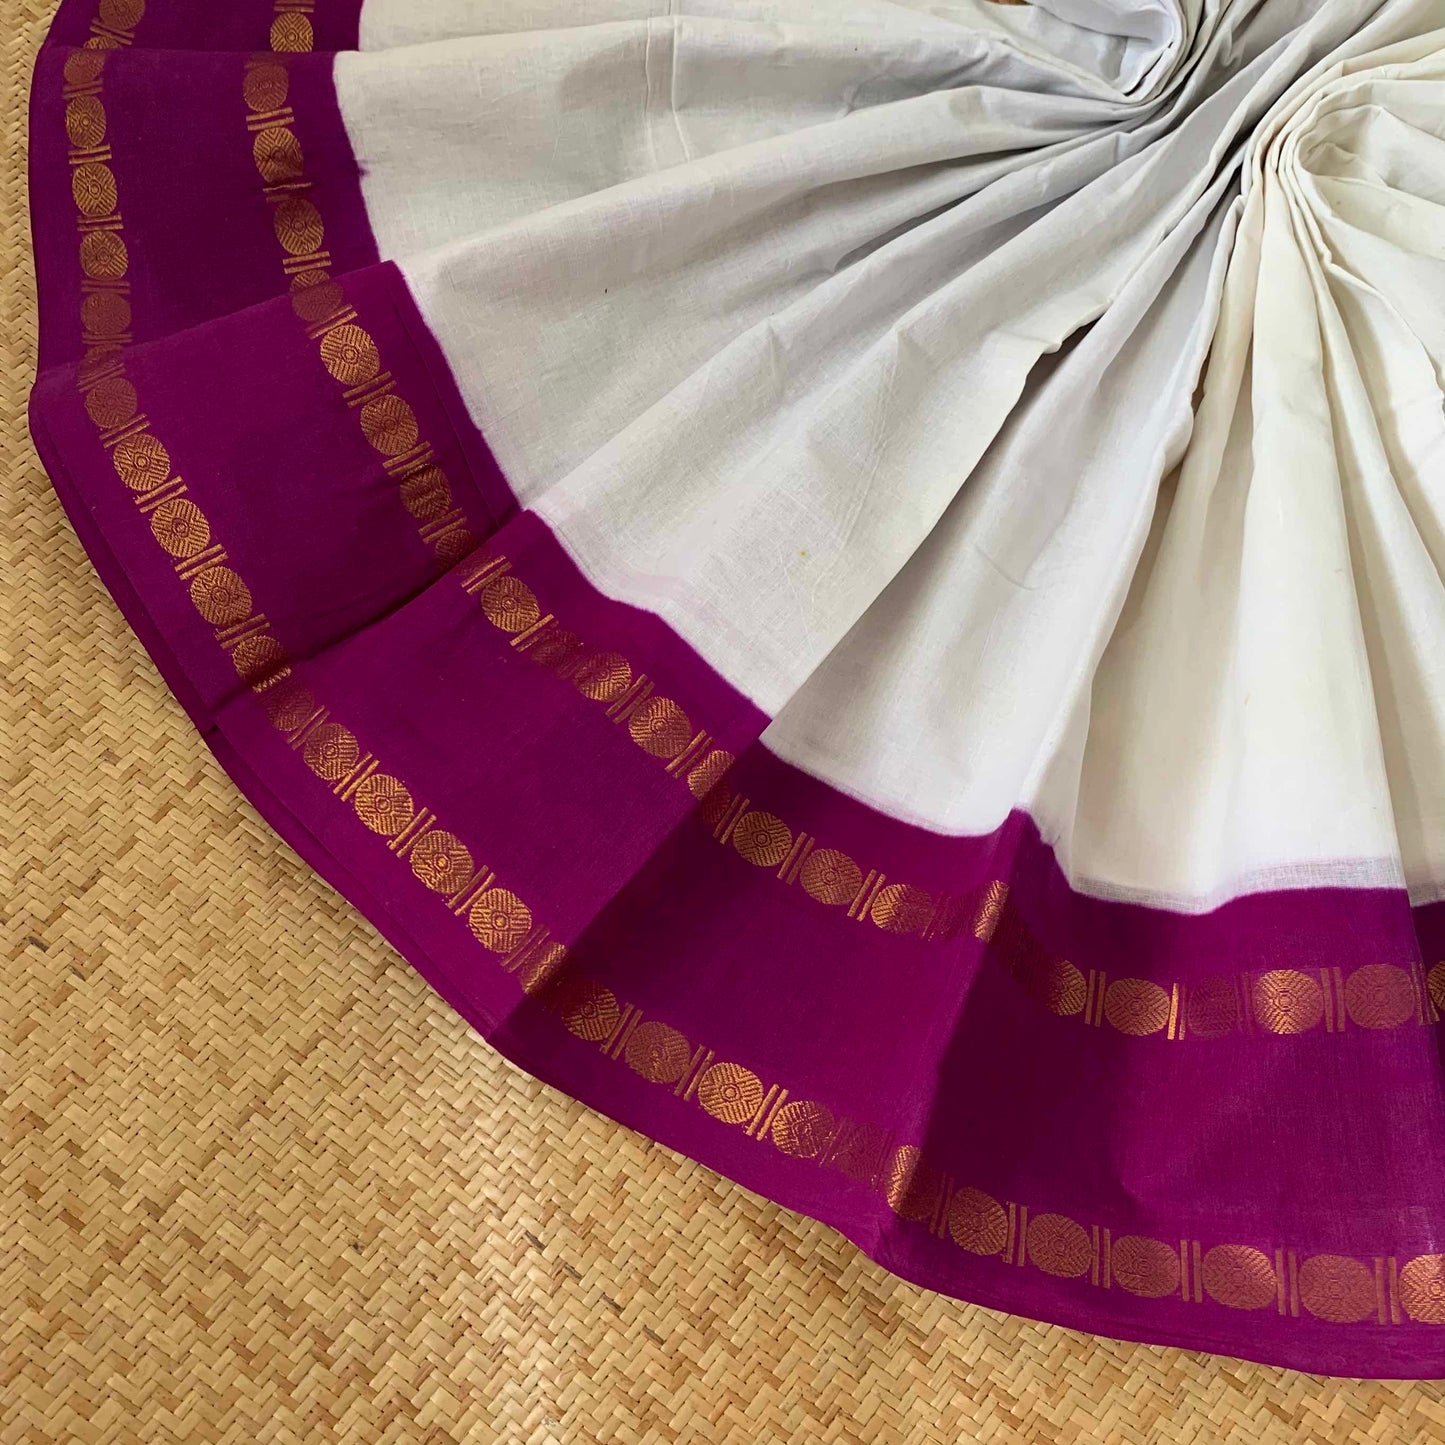 Pure white Saree With Purple Border, Zari Rudraksham Rettai Pettu Border With Running Blouse, Clamp dyed (Kattu sayam).